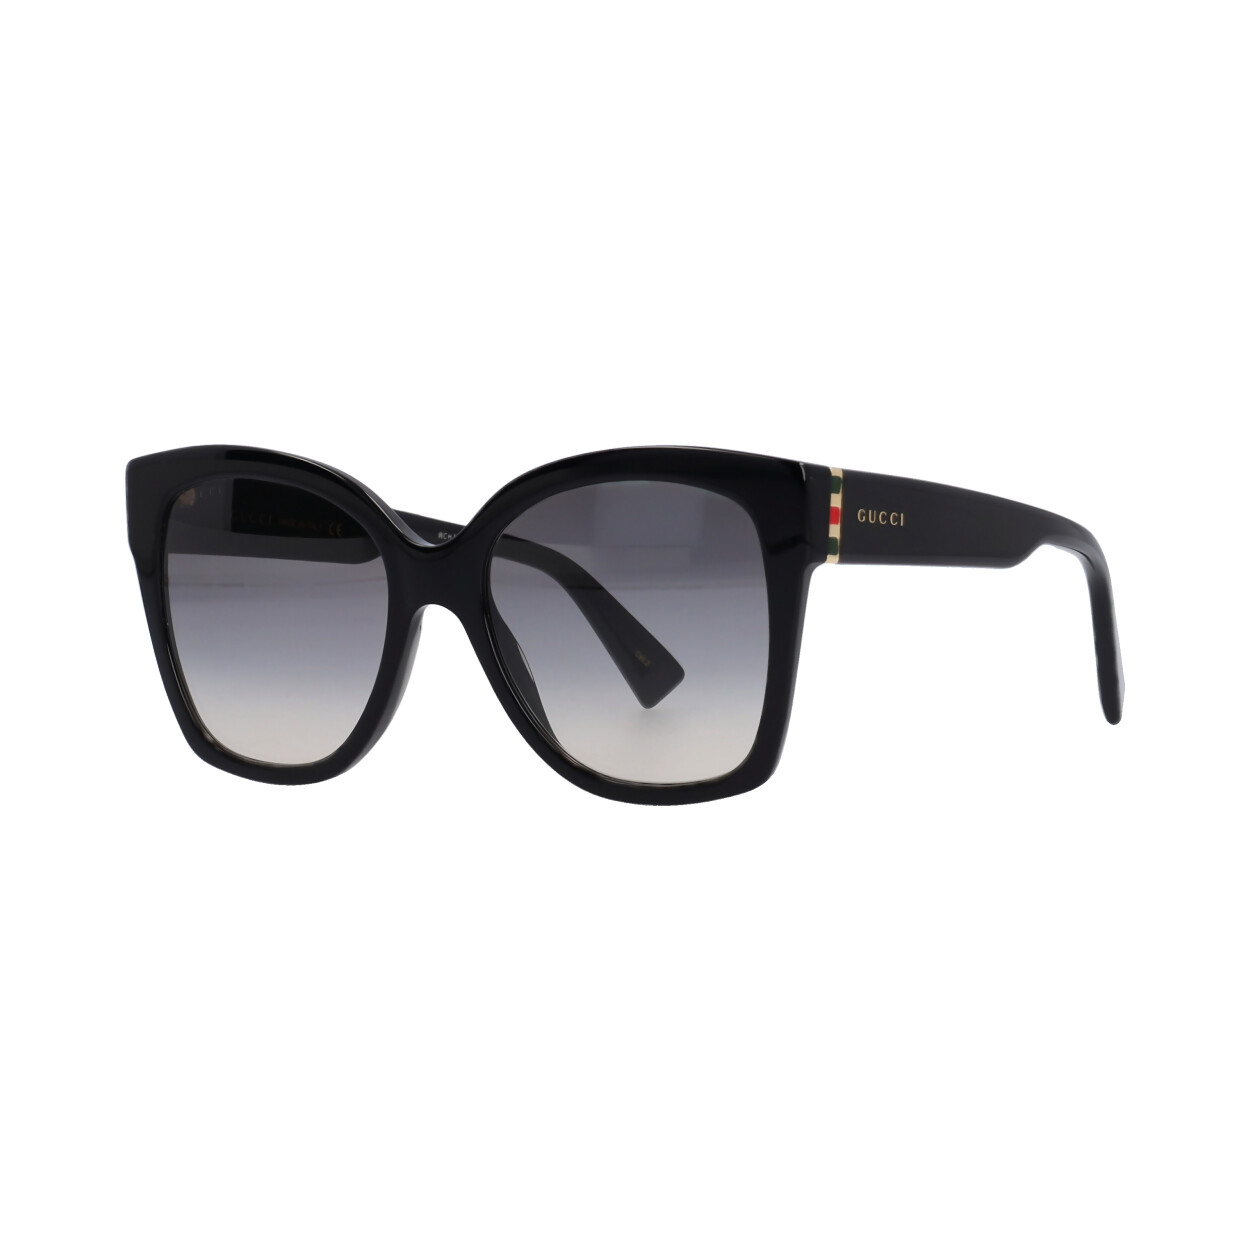 GUCCI Sunglasses GG0459S Black - NEW | Luxity